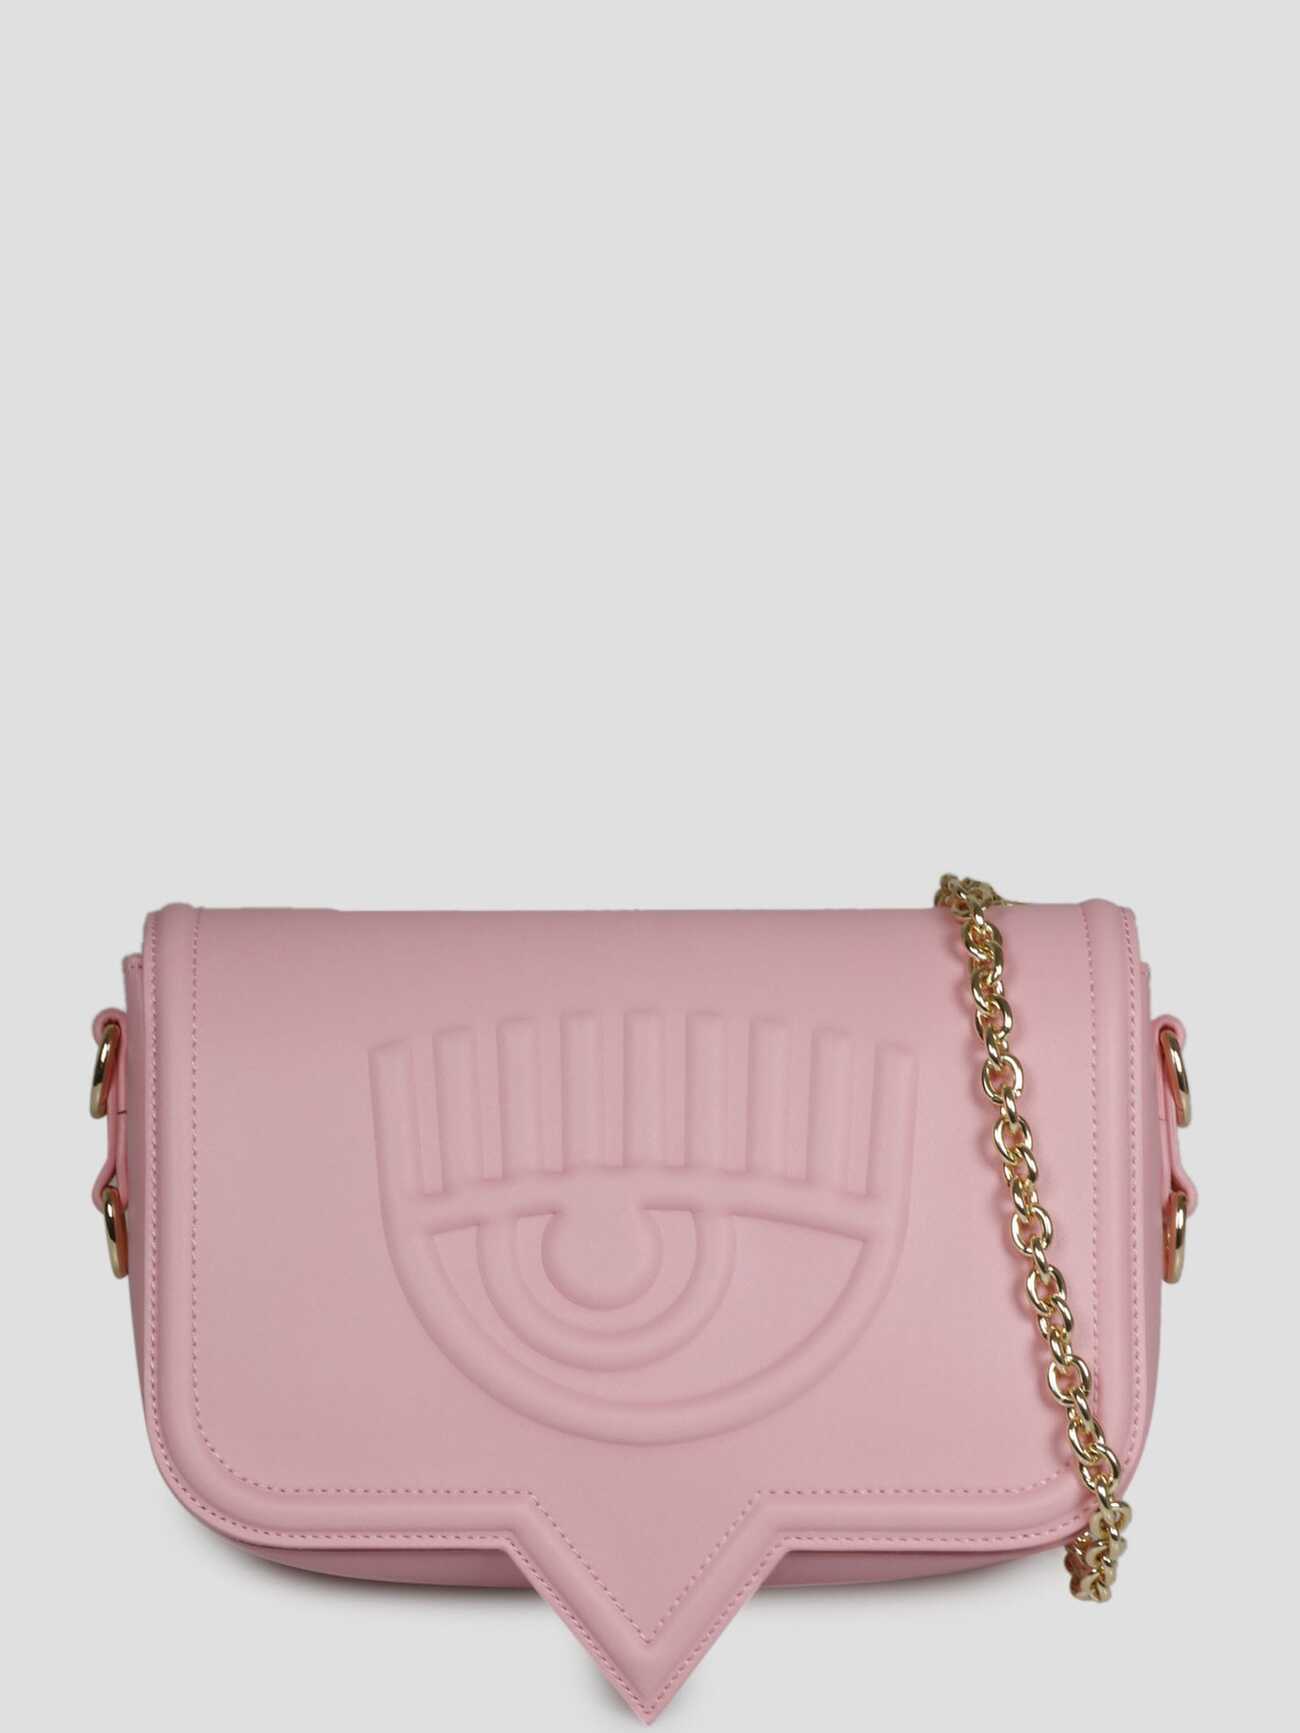 Chiara Ferragni Range A Eyelike Bag in pink / purple